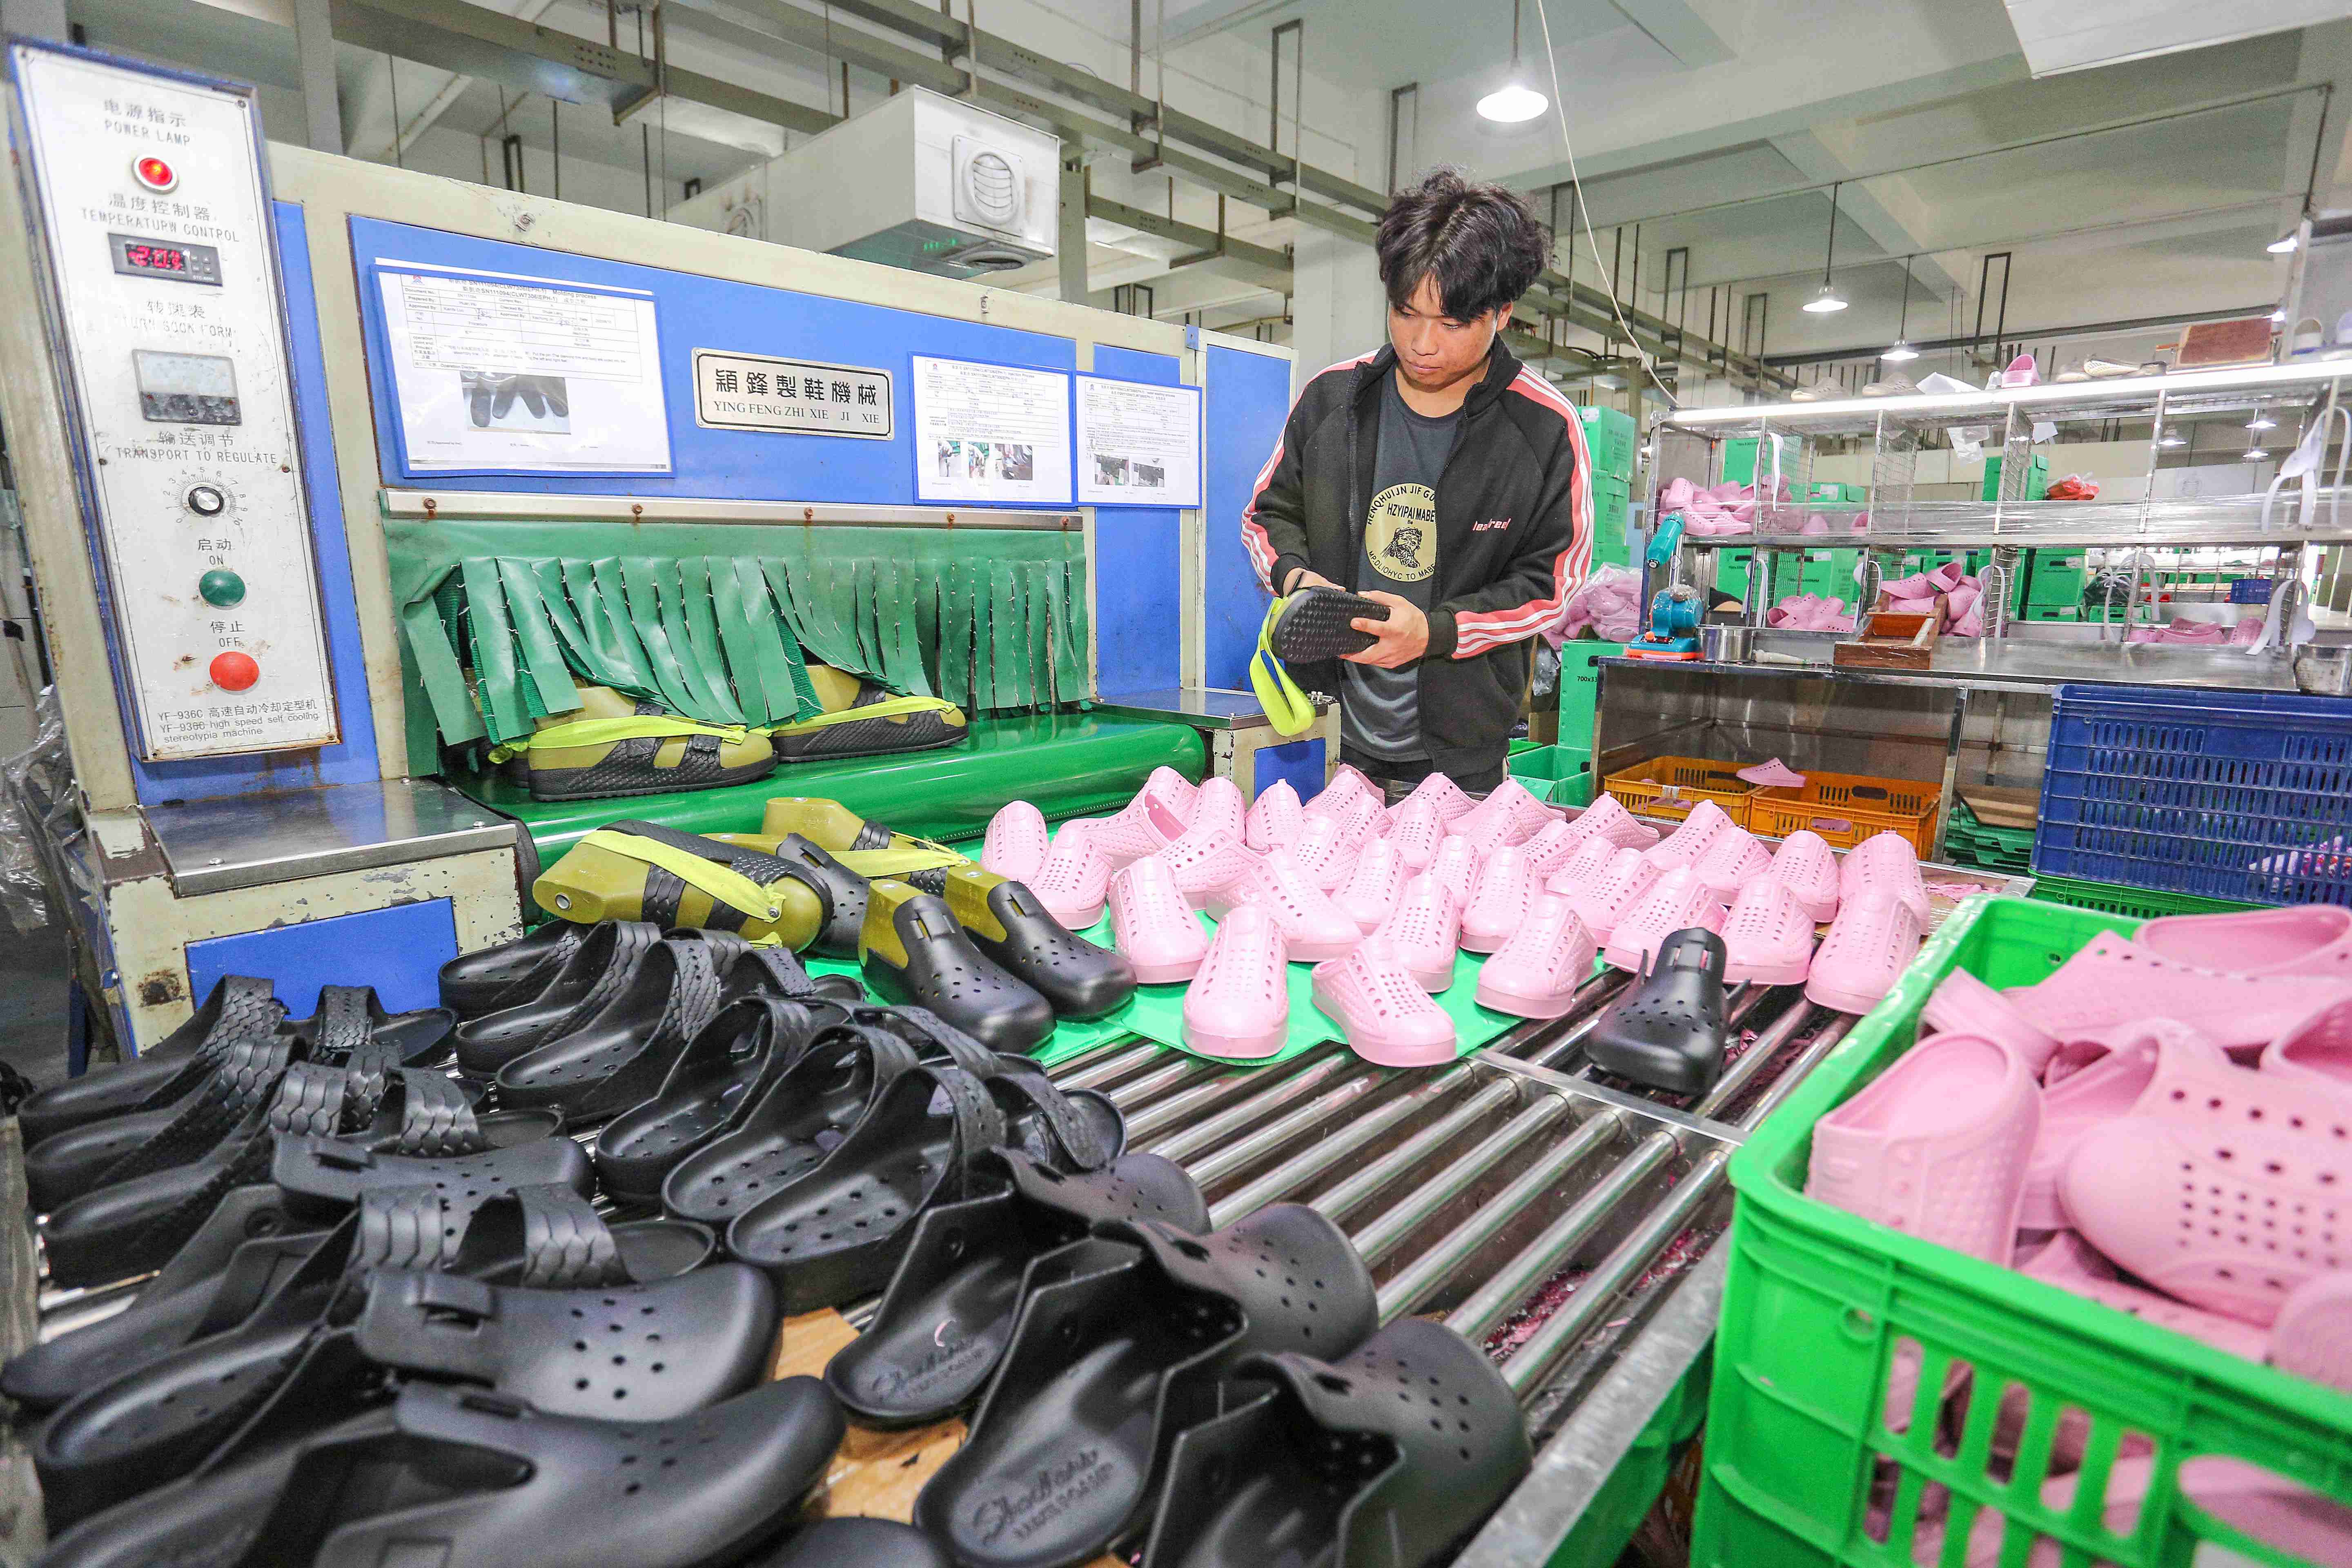 福建晋江,近期是凉鞋生产旺季,在福建晋江一鞋厂,工人正在生产线上